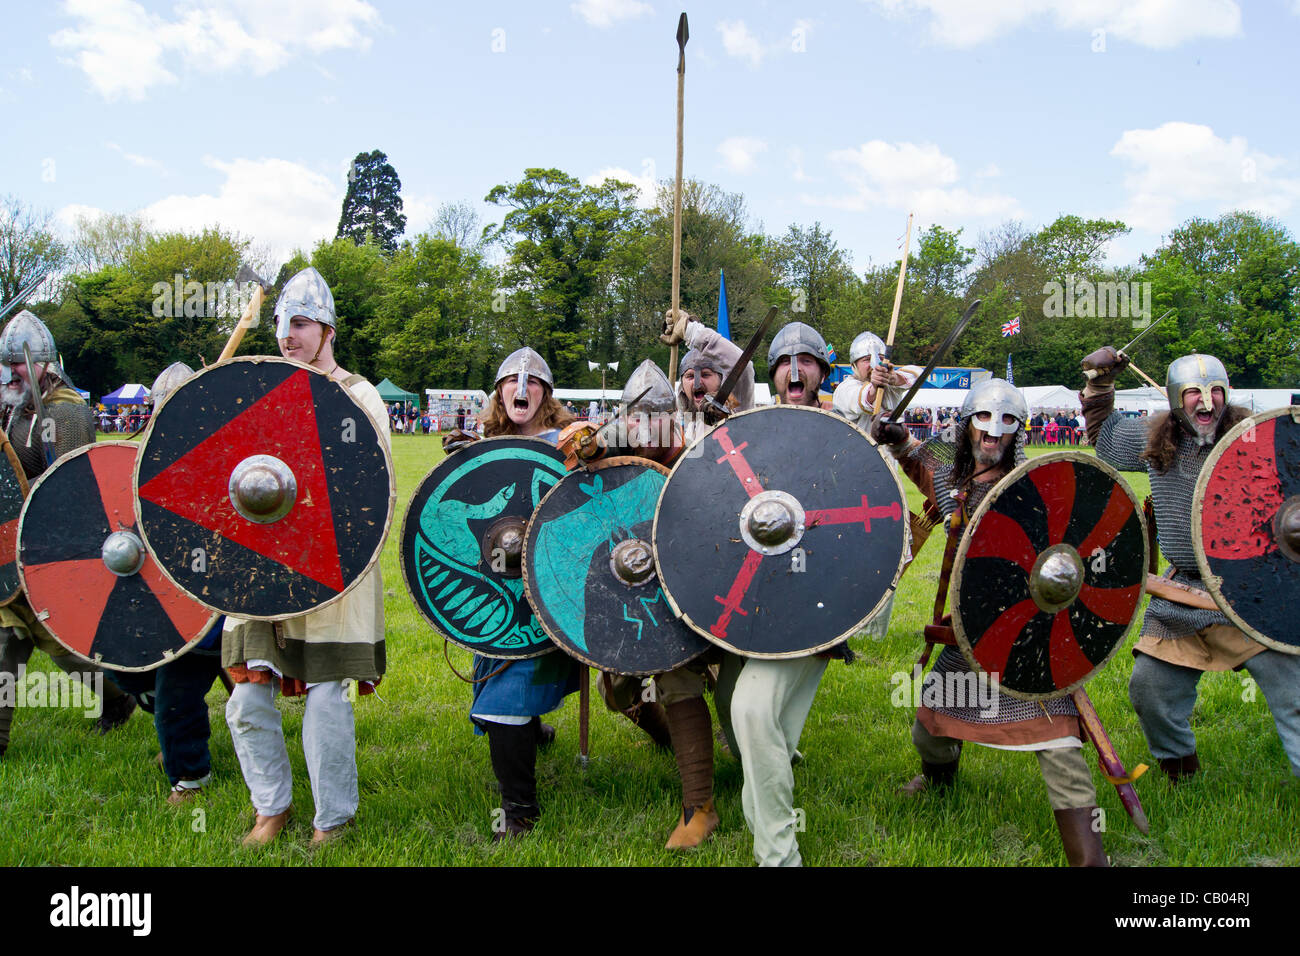 Wryngwyrm sont le côté Bedfordshire des Vikings le plus grand groupe de reconstitution au Royaume-Uni montrent des scènes de combat viking Banque D'Images